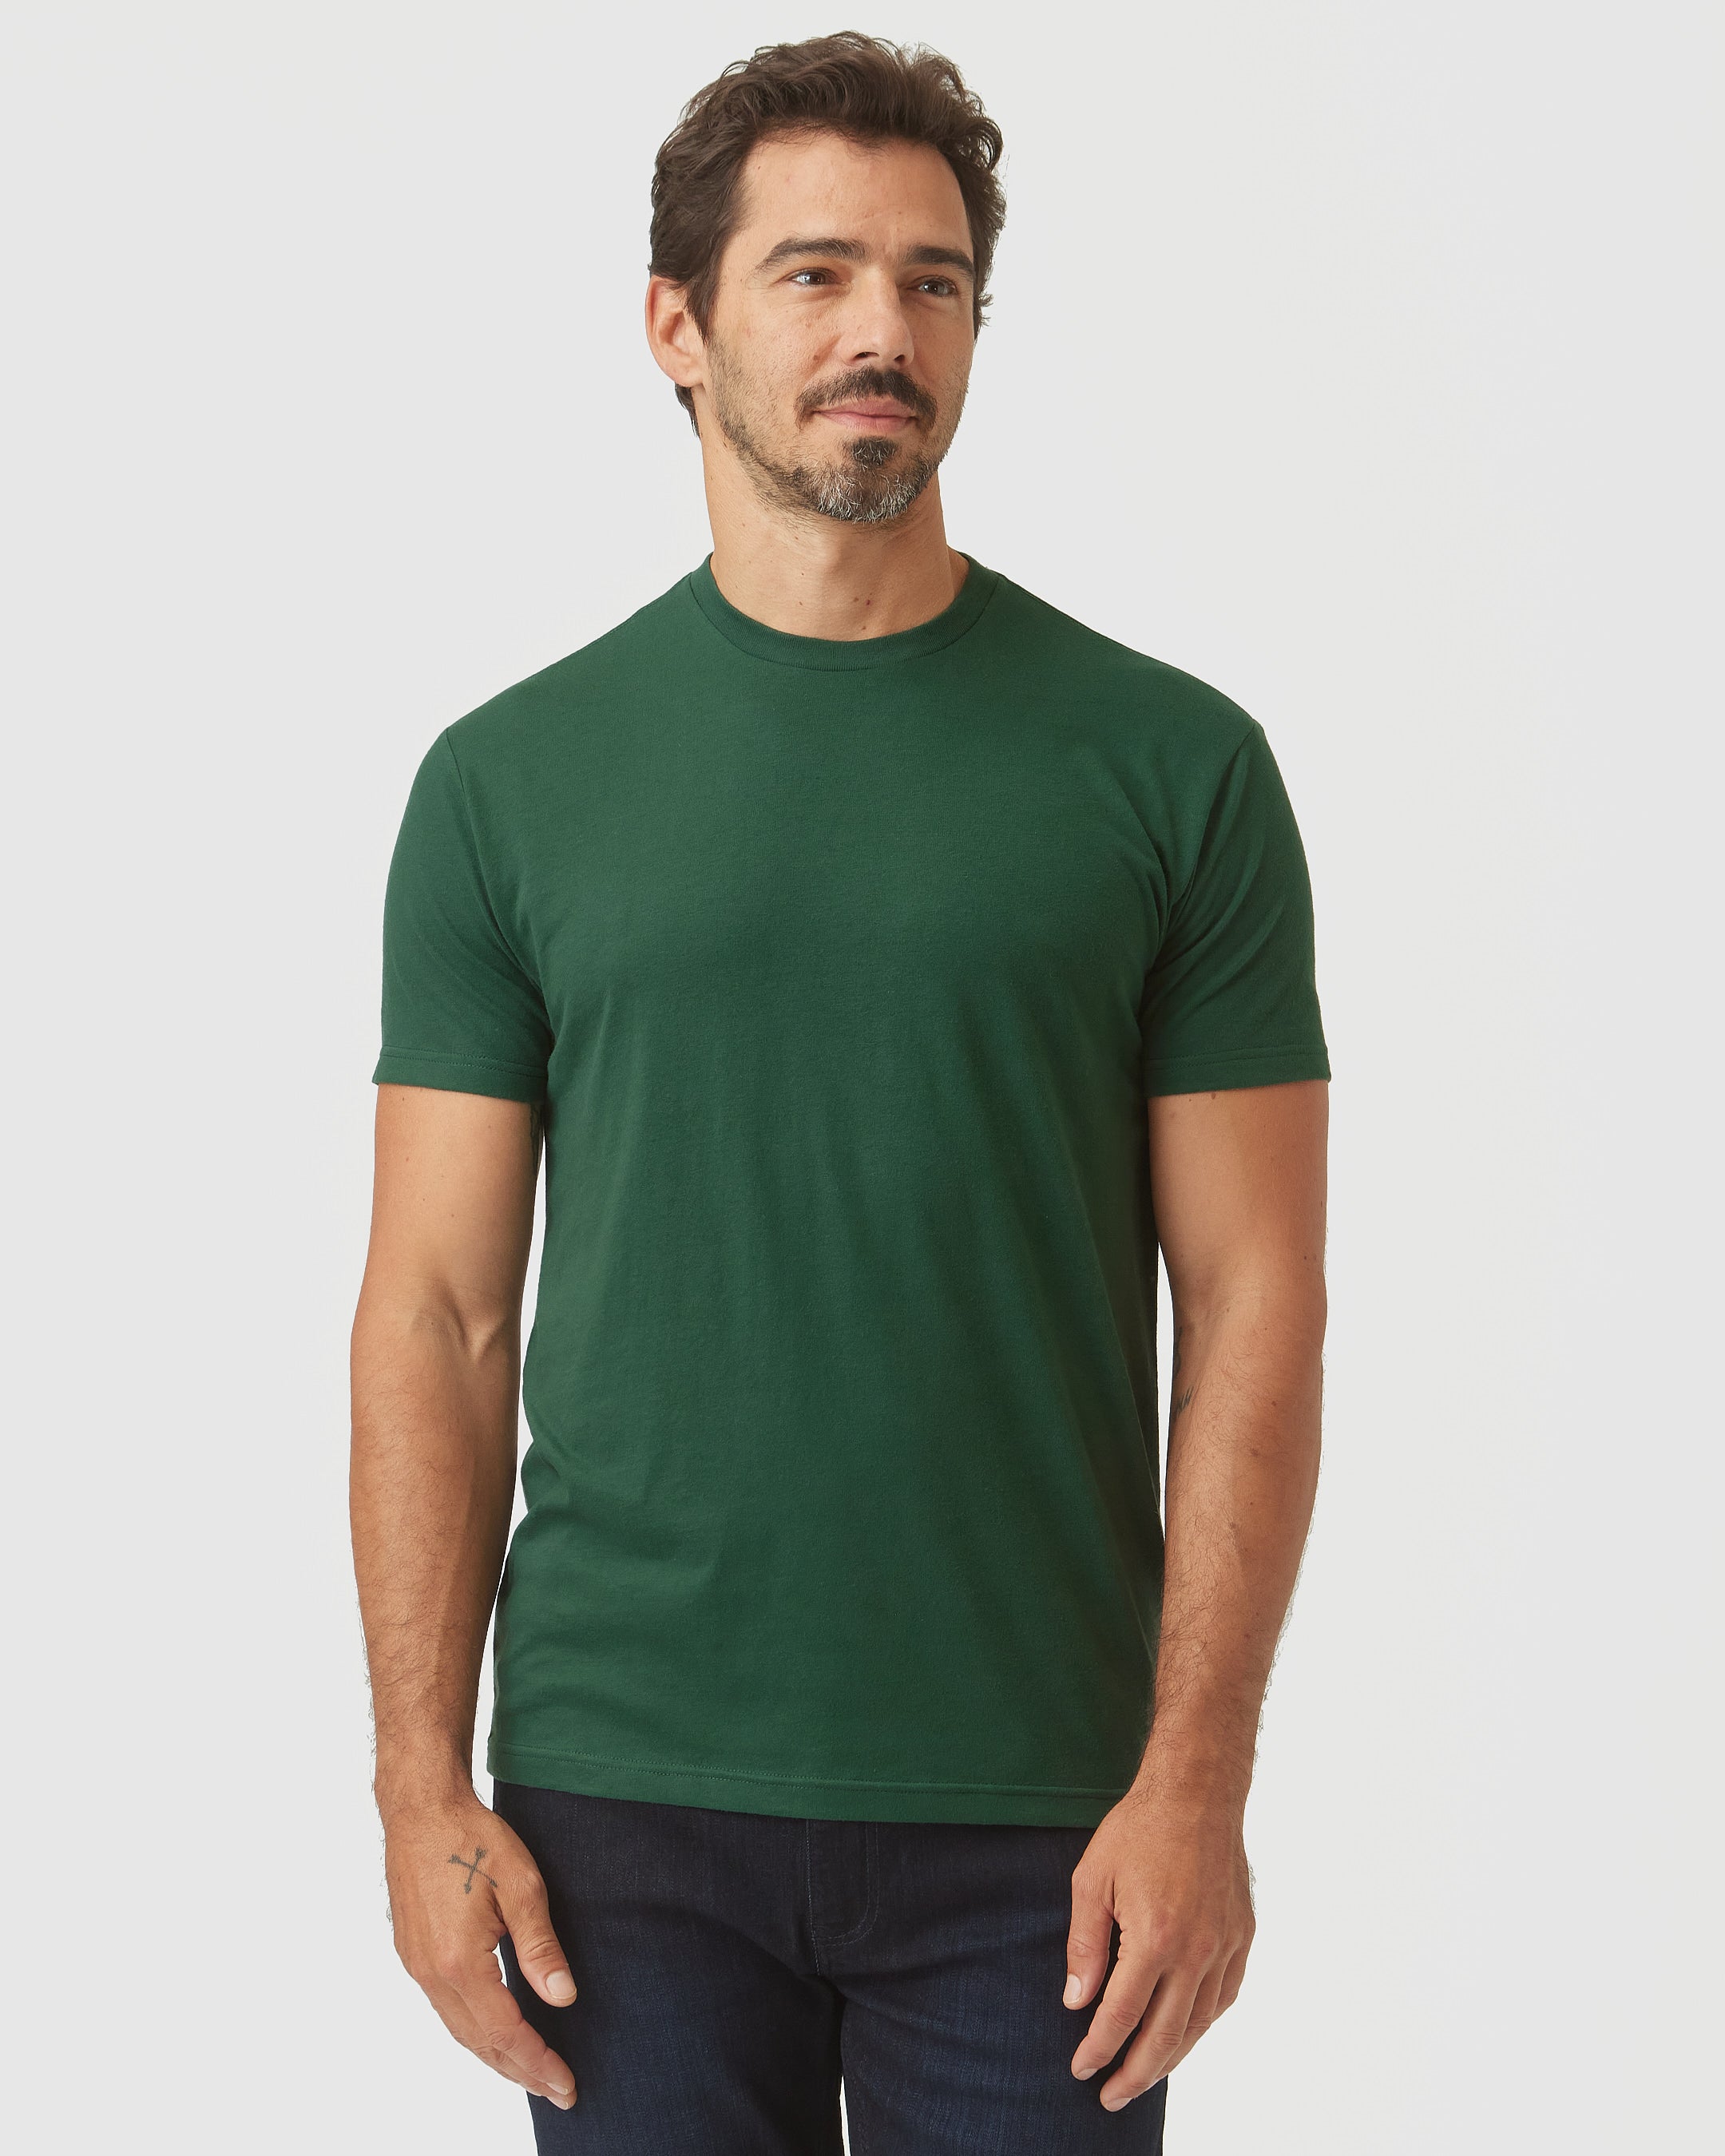 Moss Green Crew Neck T-Shirt